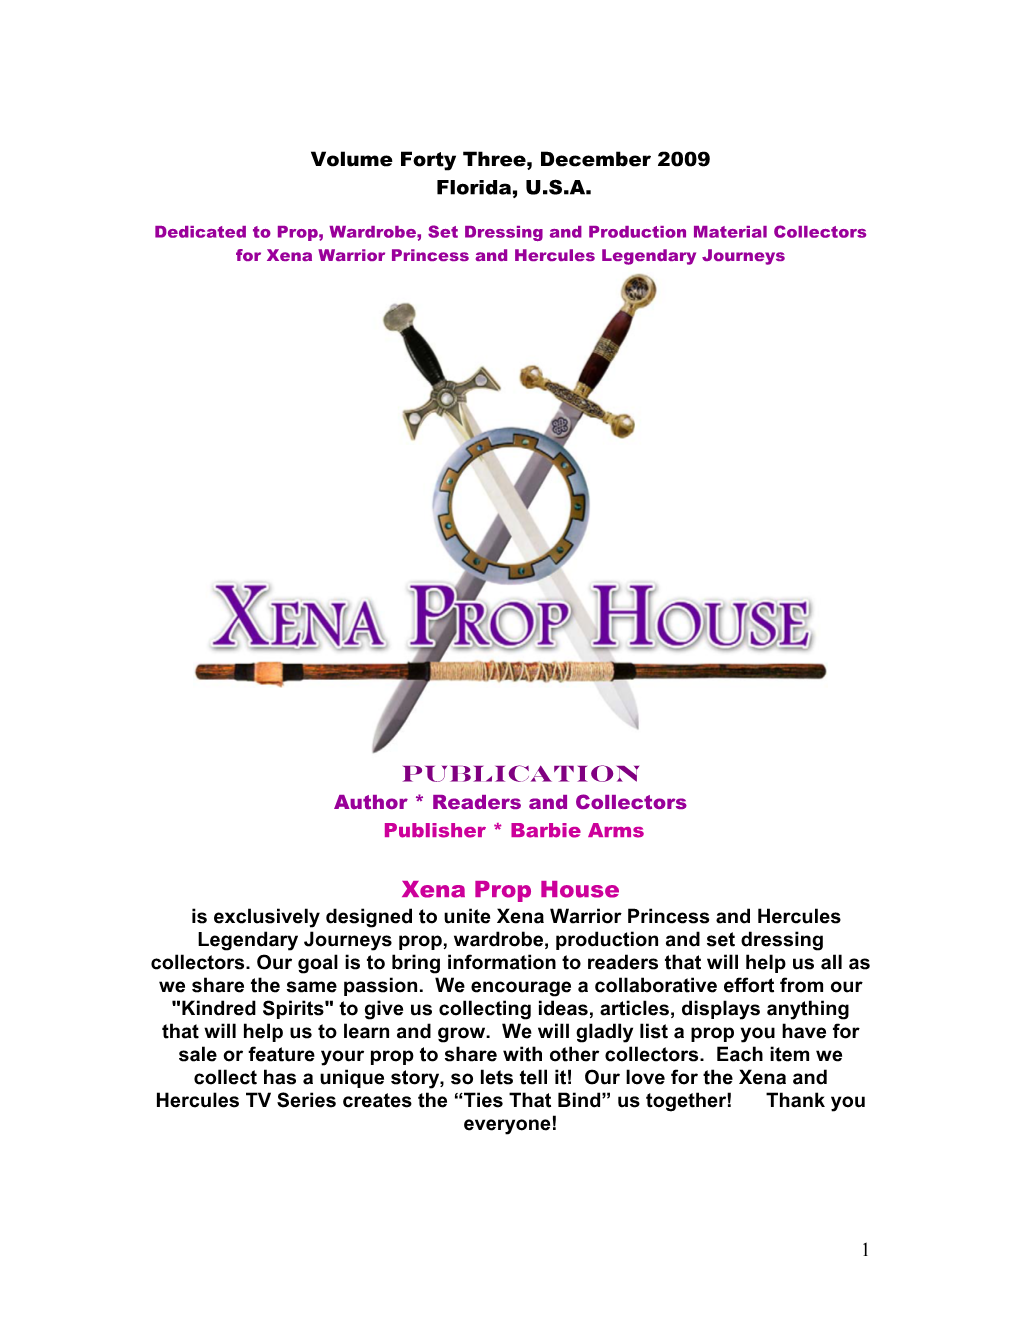 PUBLICATION Xena Prop House